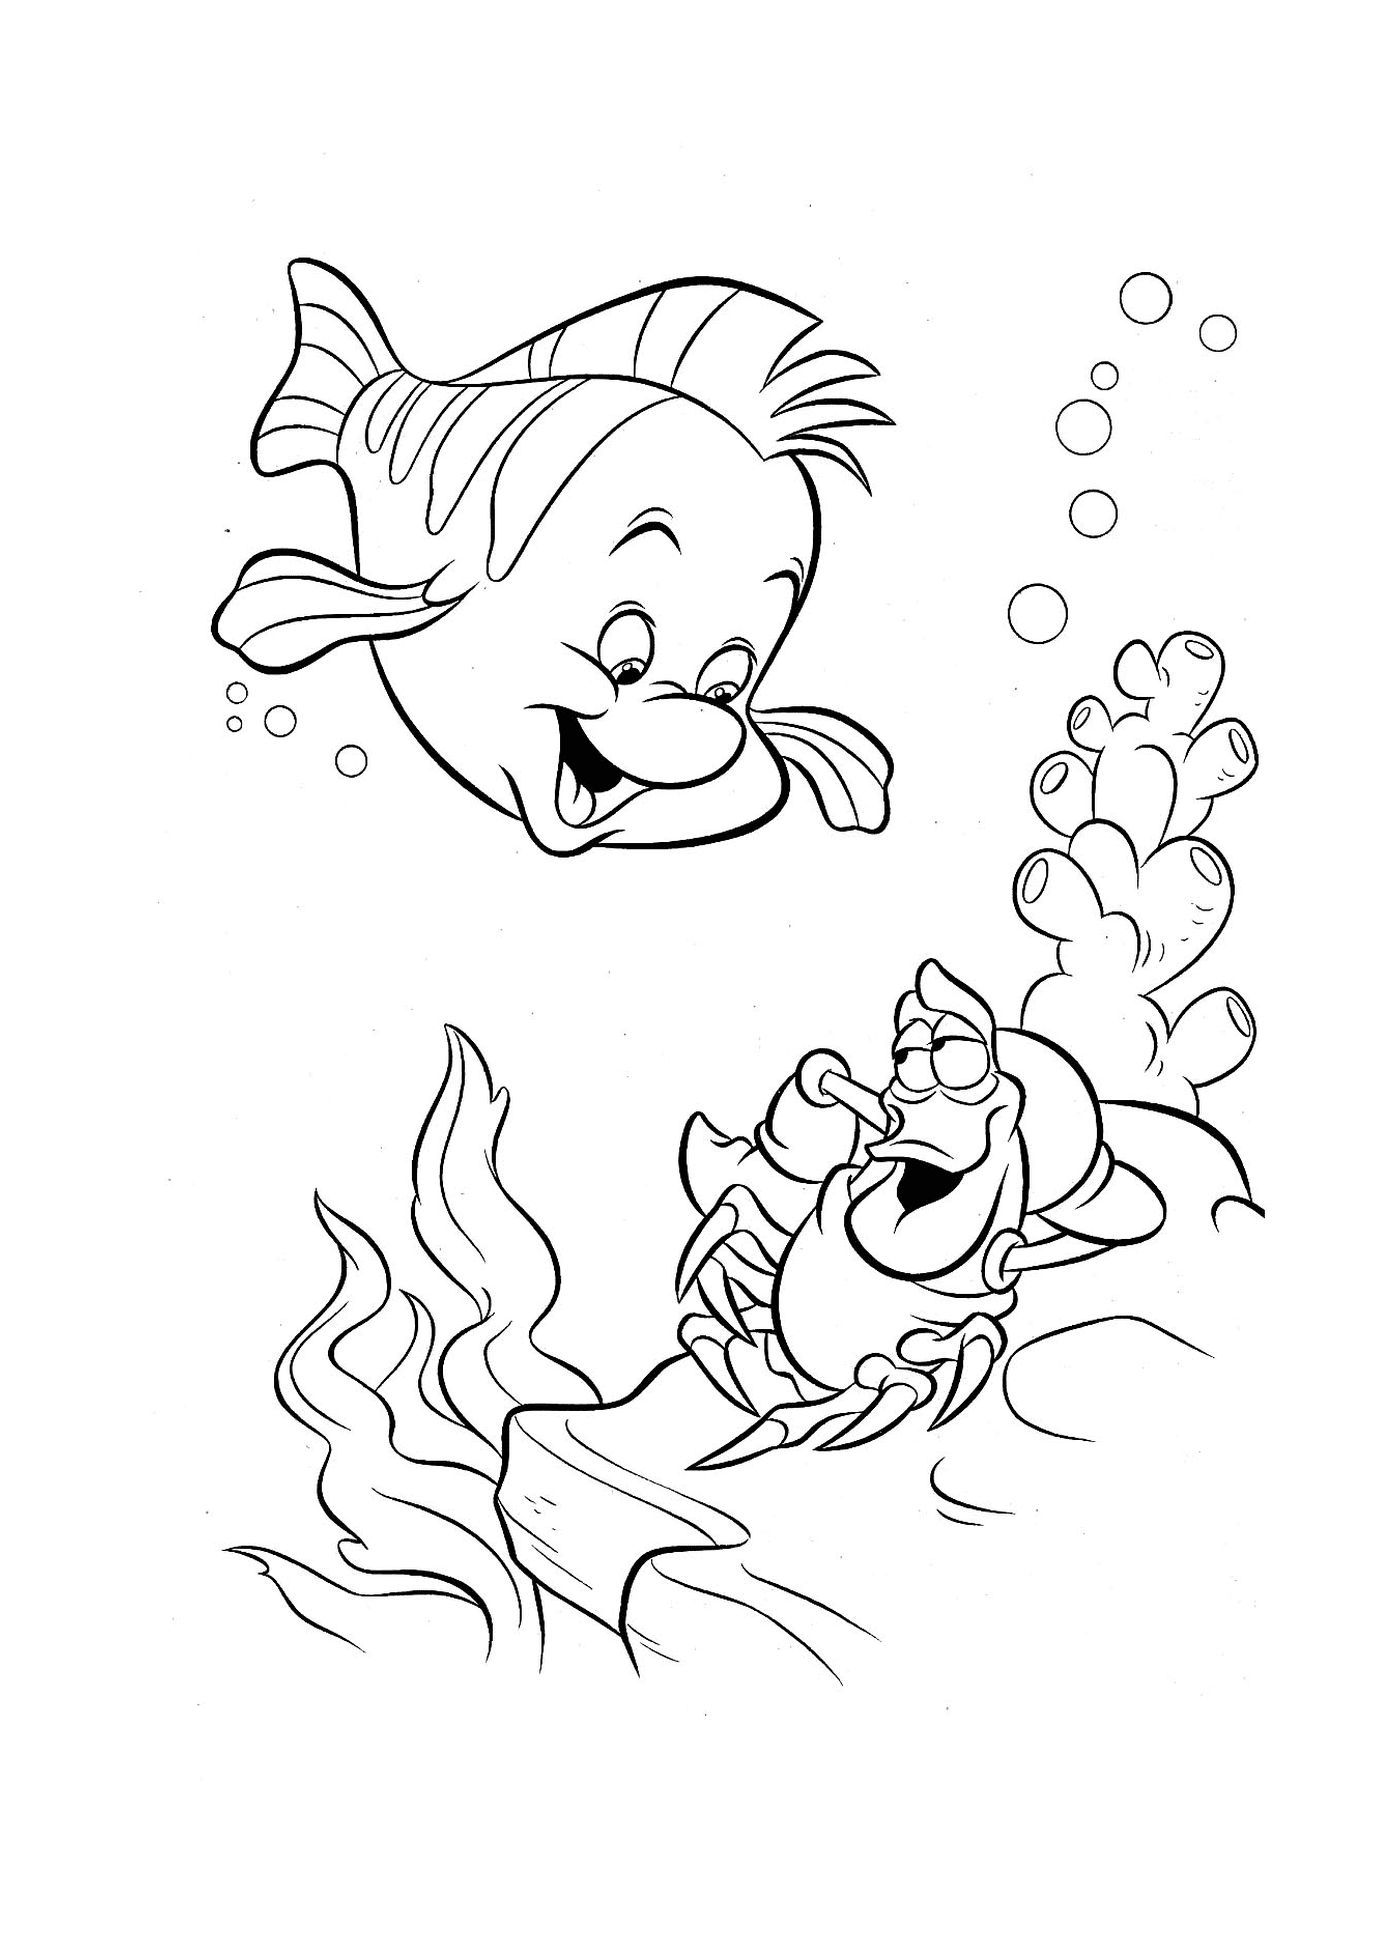  Um peixe e um caranguejo nadam juntos 